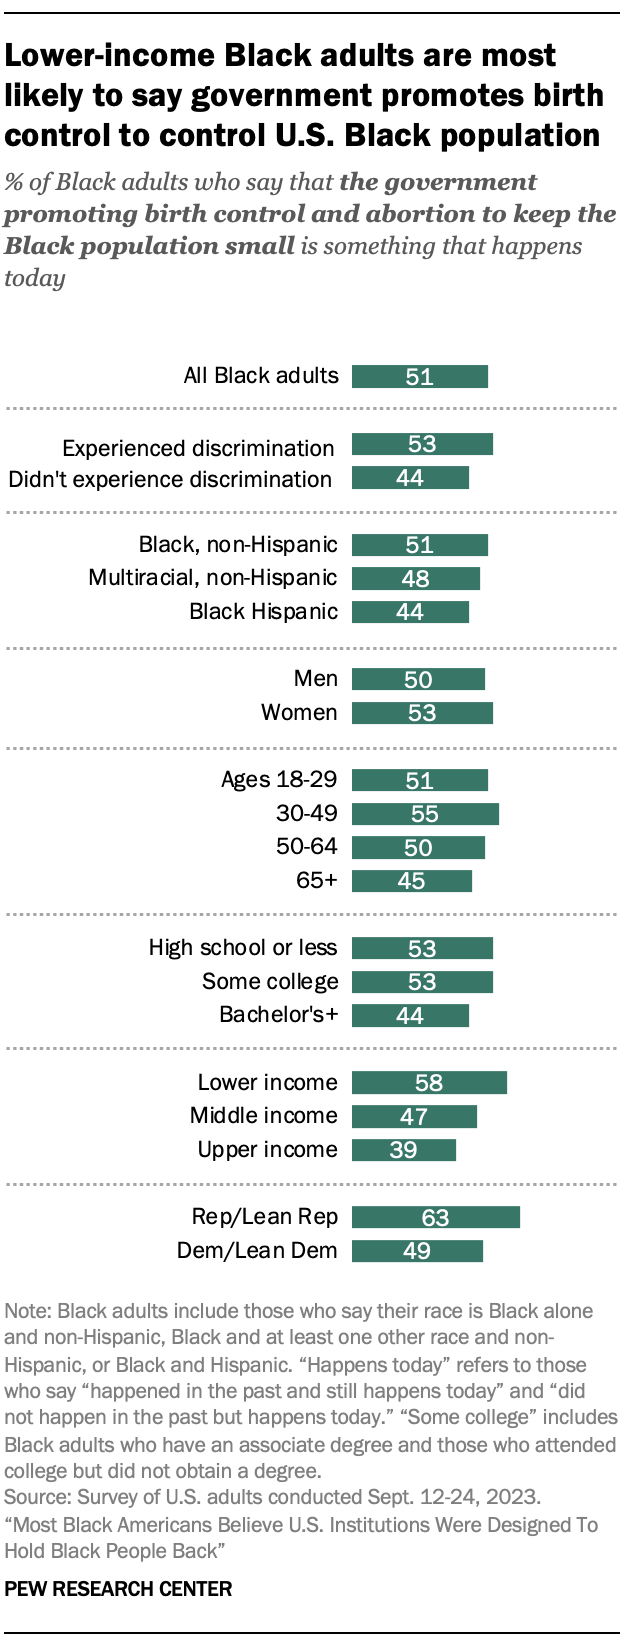 Un graphique à barres montrant que les adultes noirs à faible revenu sont les plus susceptibles de dire que le gouvernement promeut le contrôle des naissances pour contrôler la population noire des États-Unis.